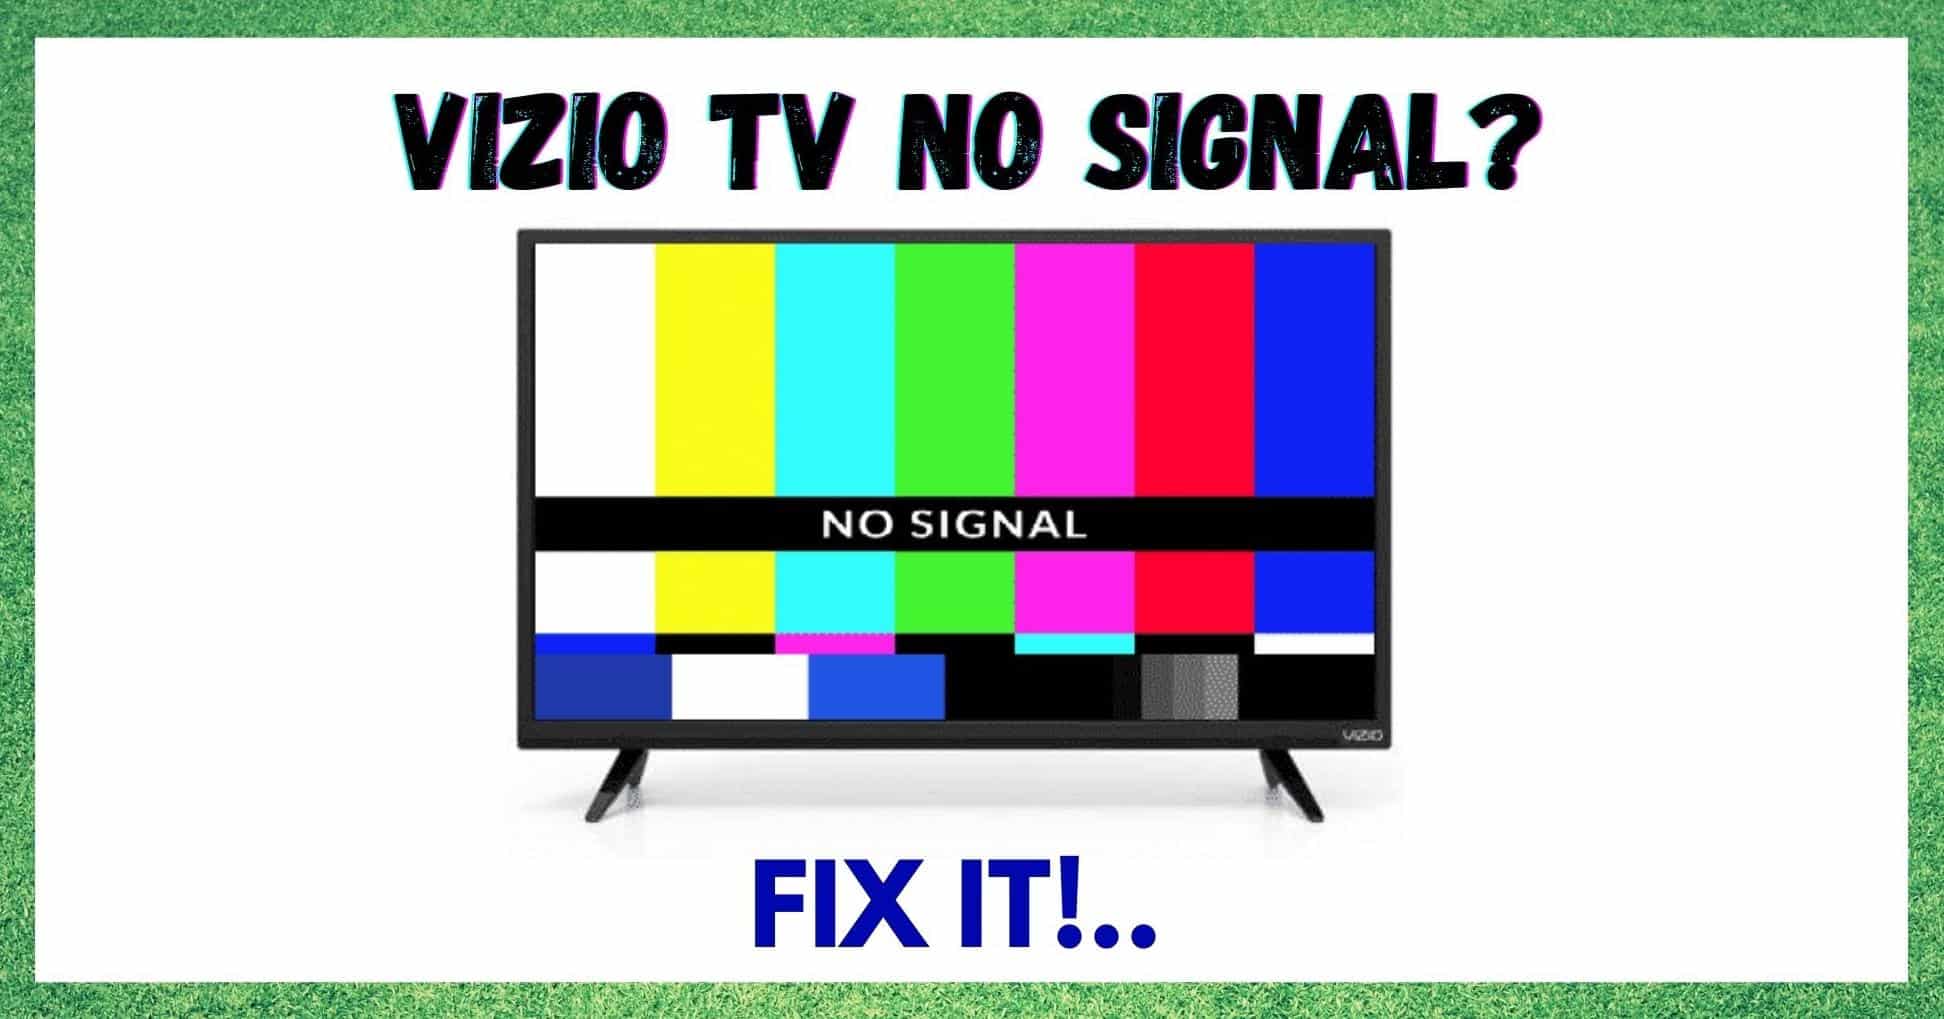 3 spôsoby opravy problému s televízorom Vizio bez signálu